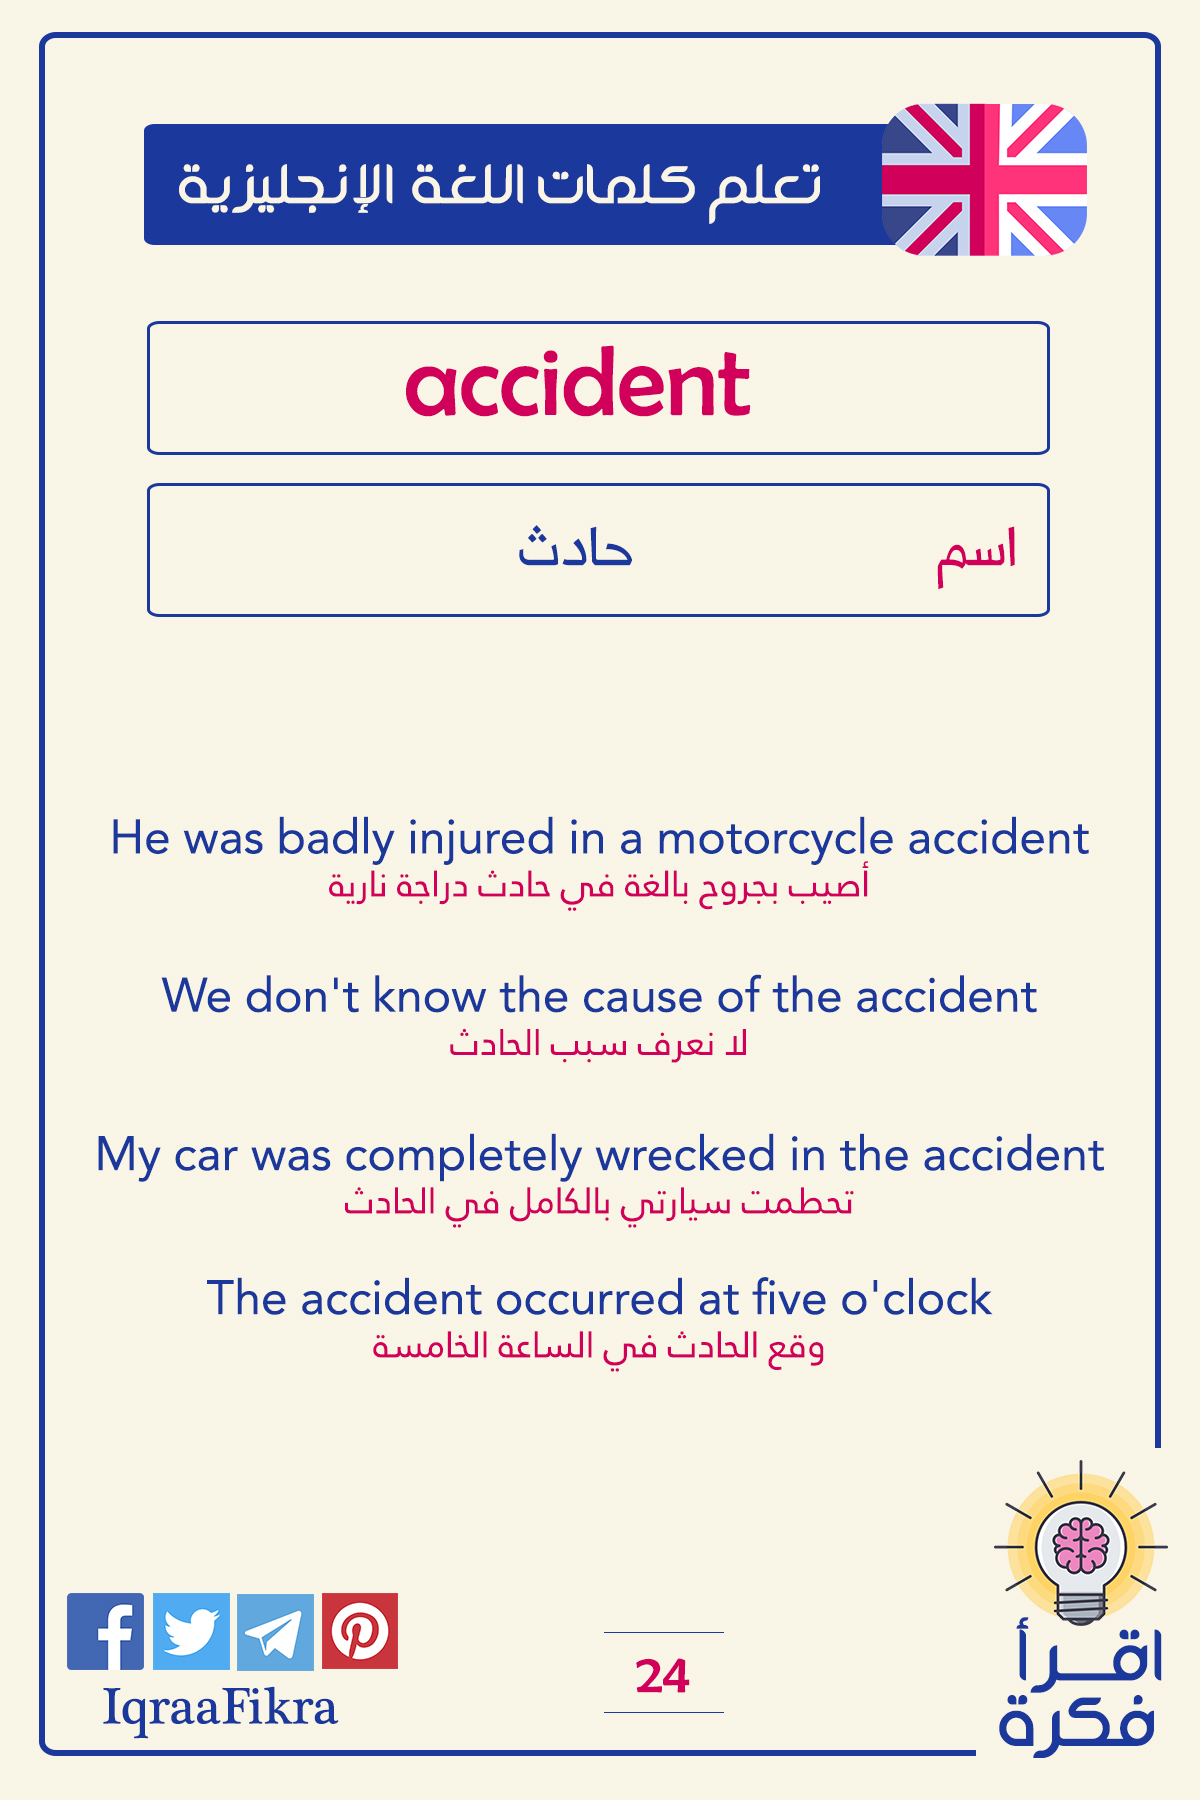 معنى كلمة حادث في اللغة العربية وترجمتها وبعض الأمثلة عليها مع معانيها